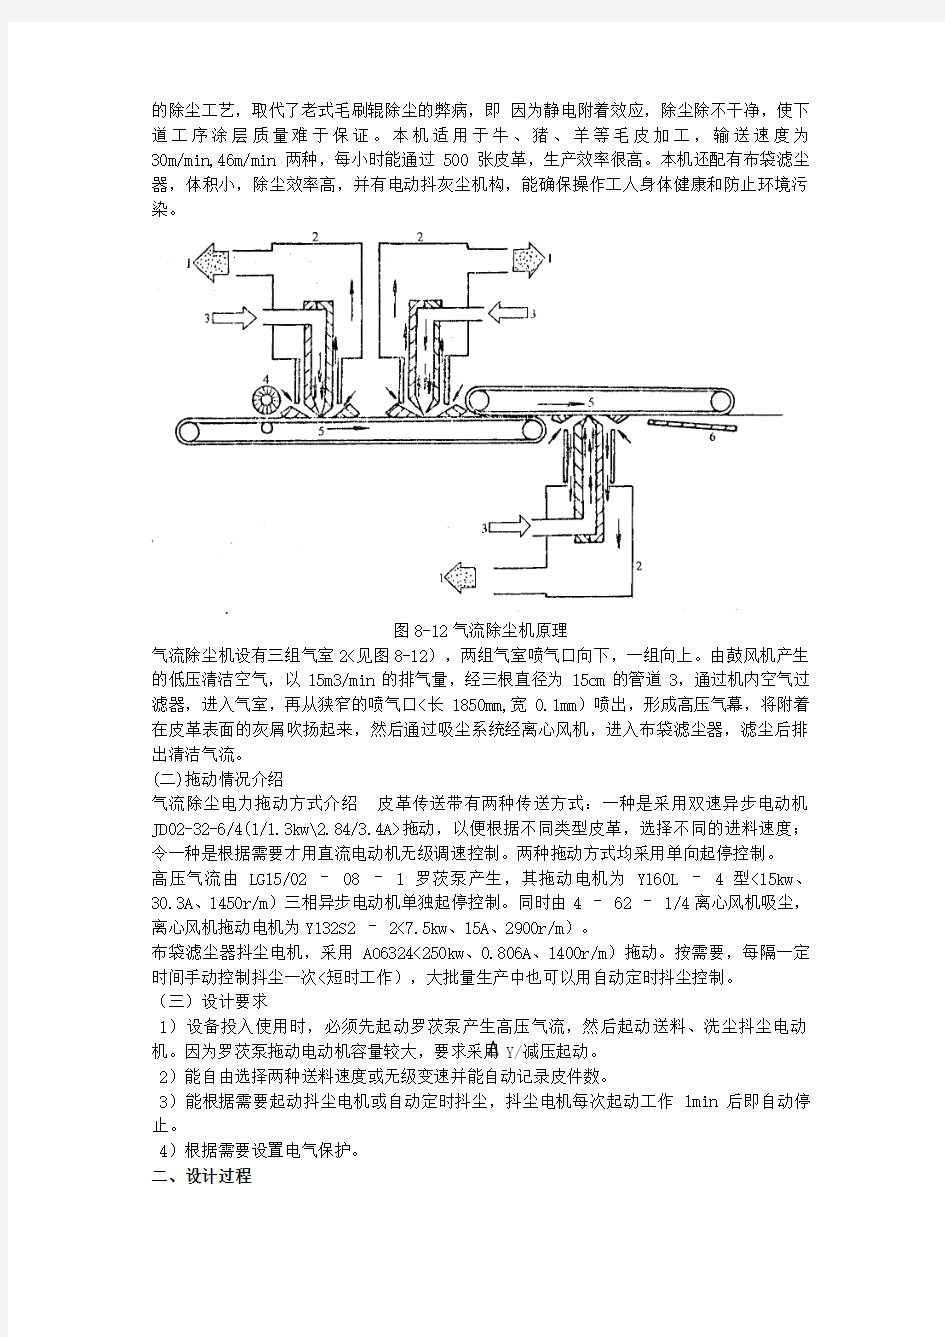 气流除尘机电气控制系统设计方案说明书